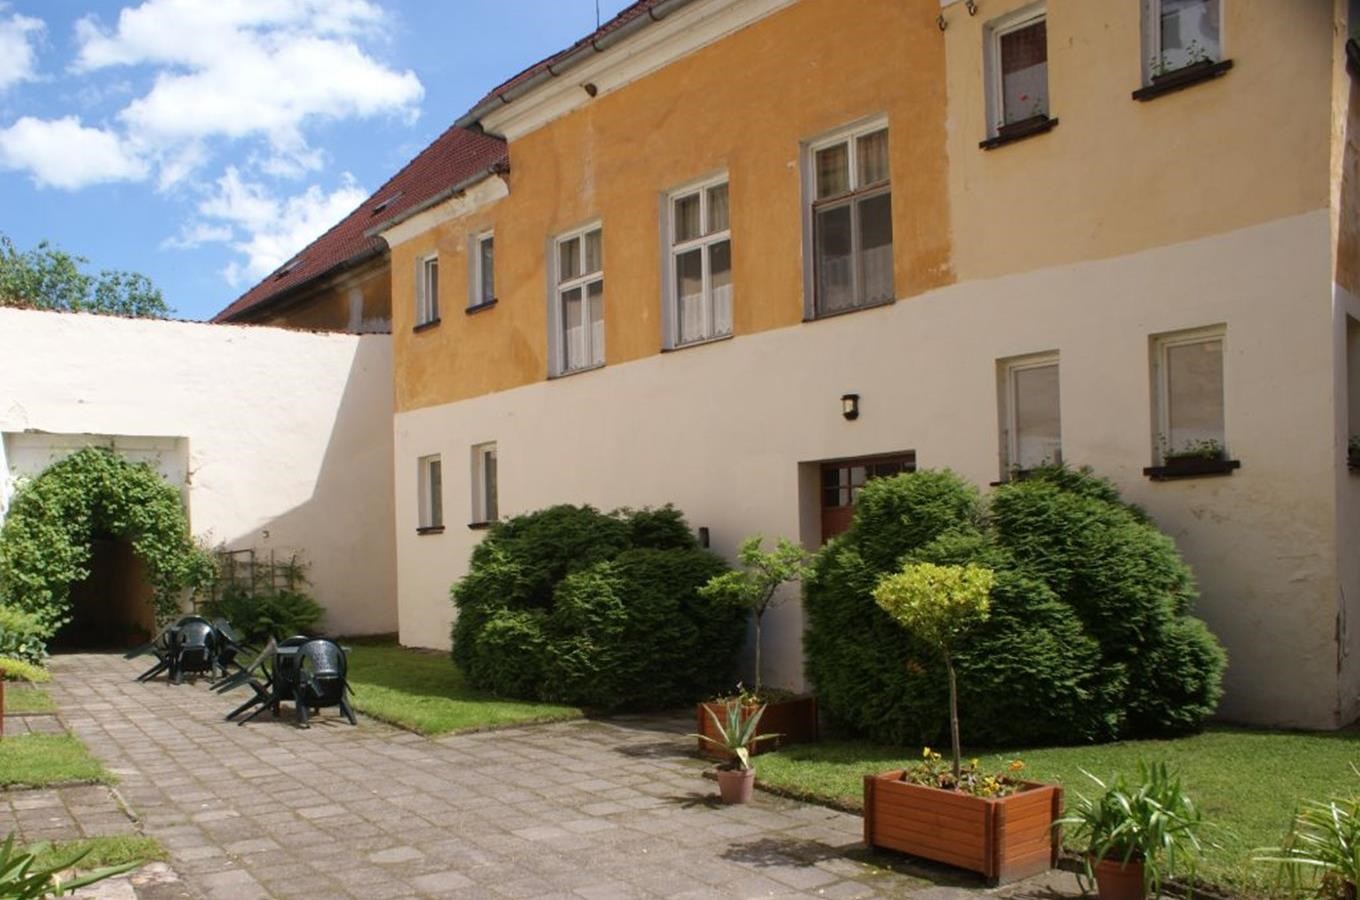 Zámecký hostel - romantické ubytování na zámku v Třeboni